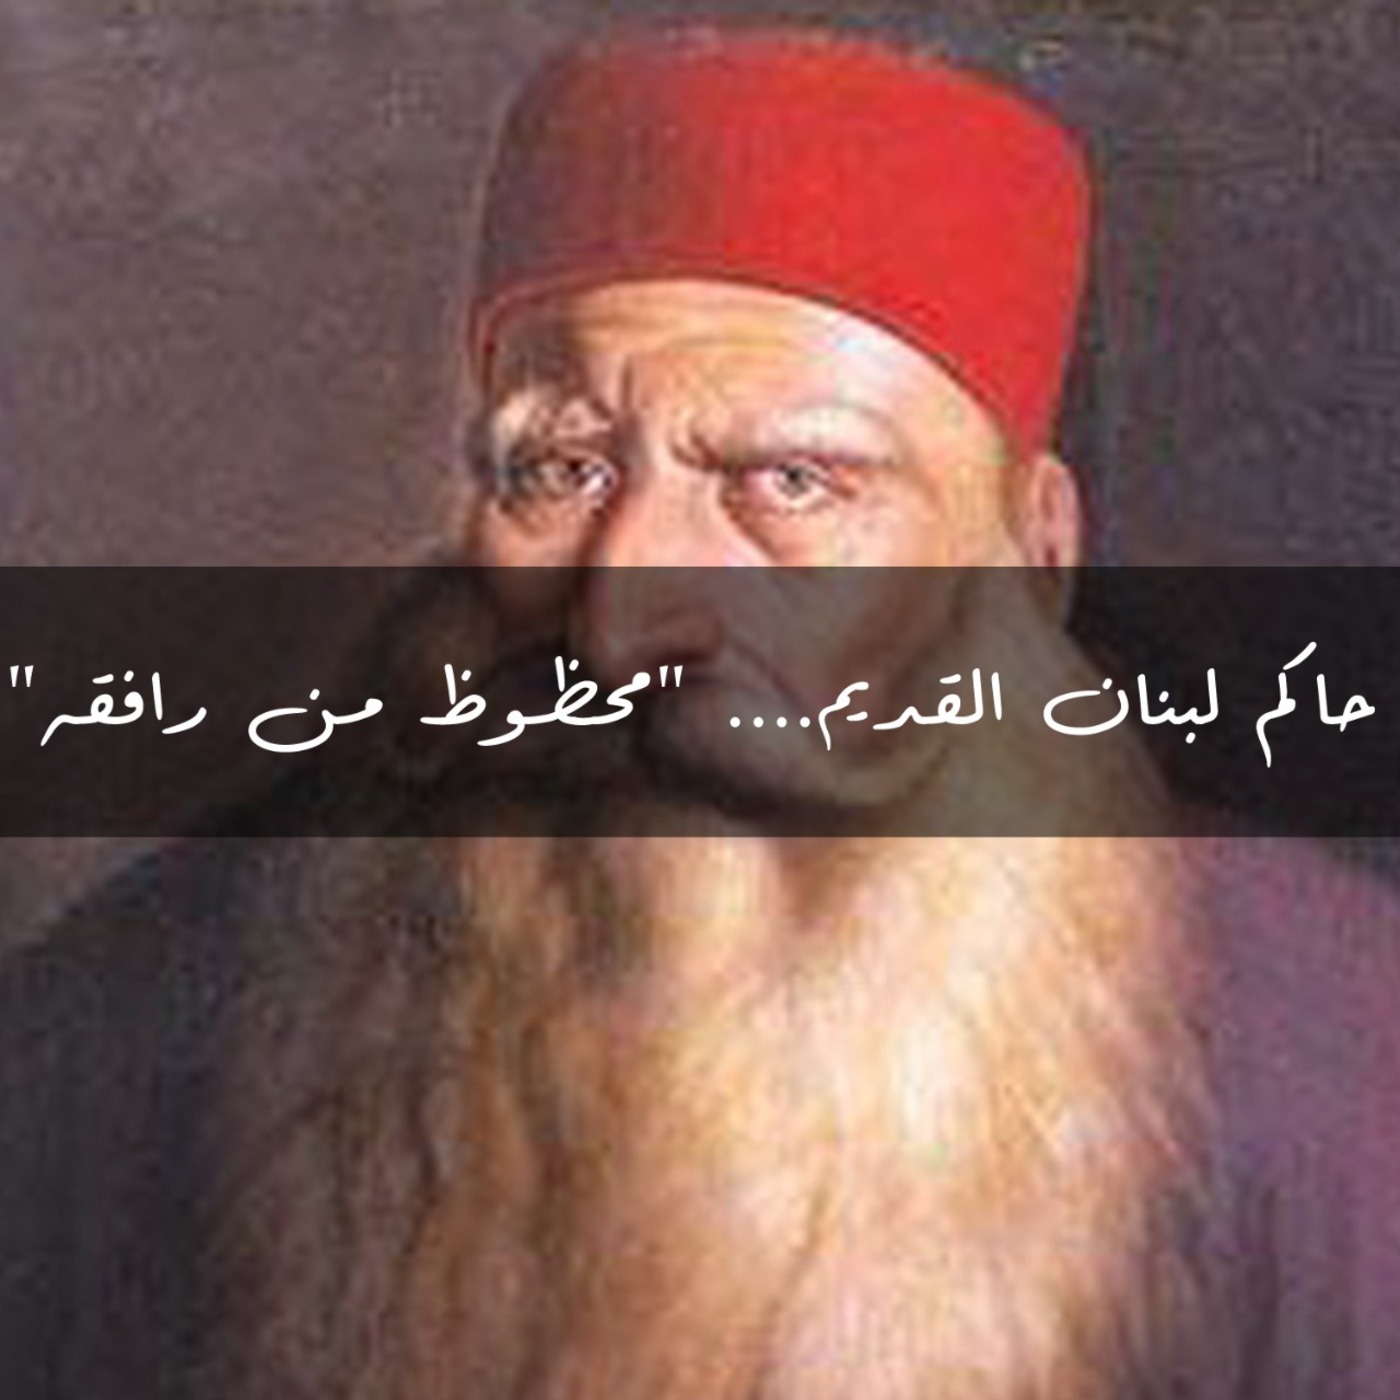 حاكم لبنان القديم.... "محظوظ من رافقه"